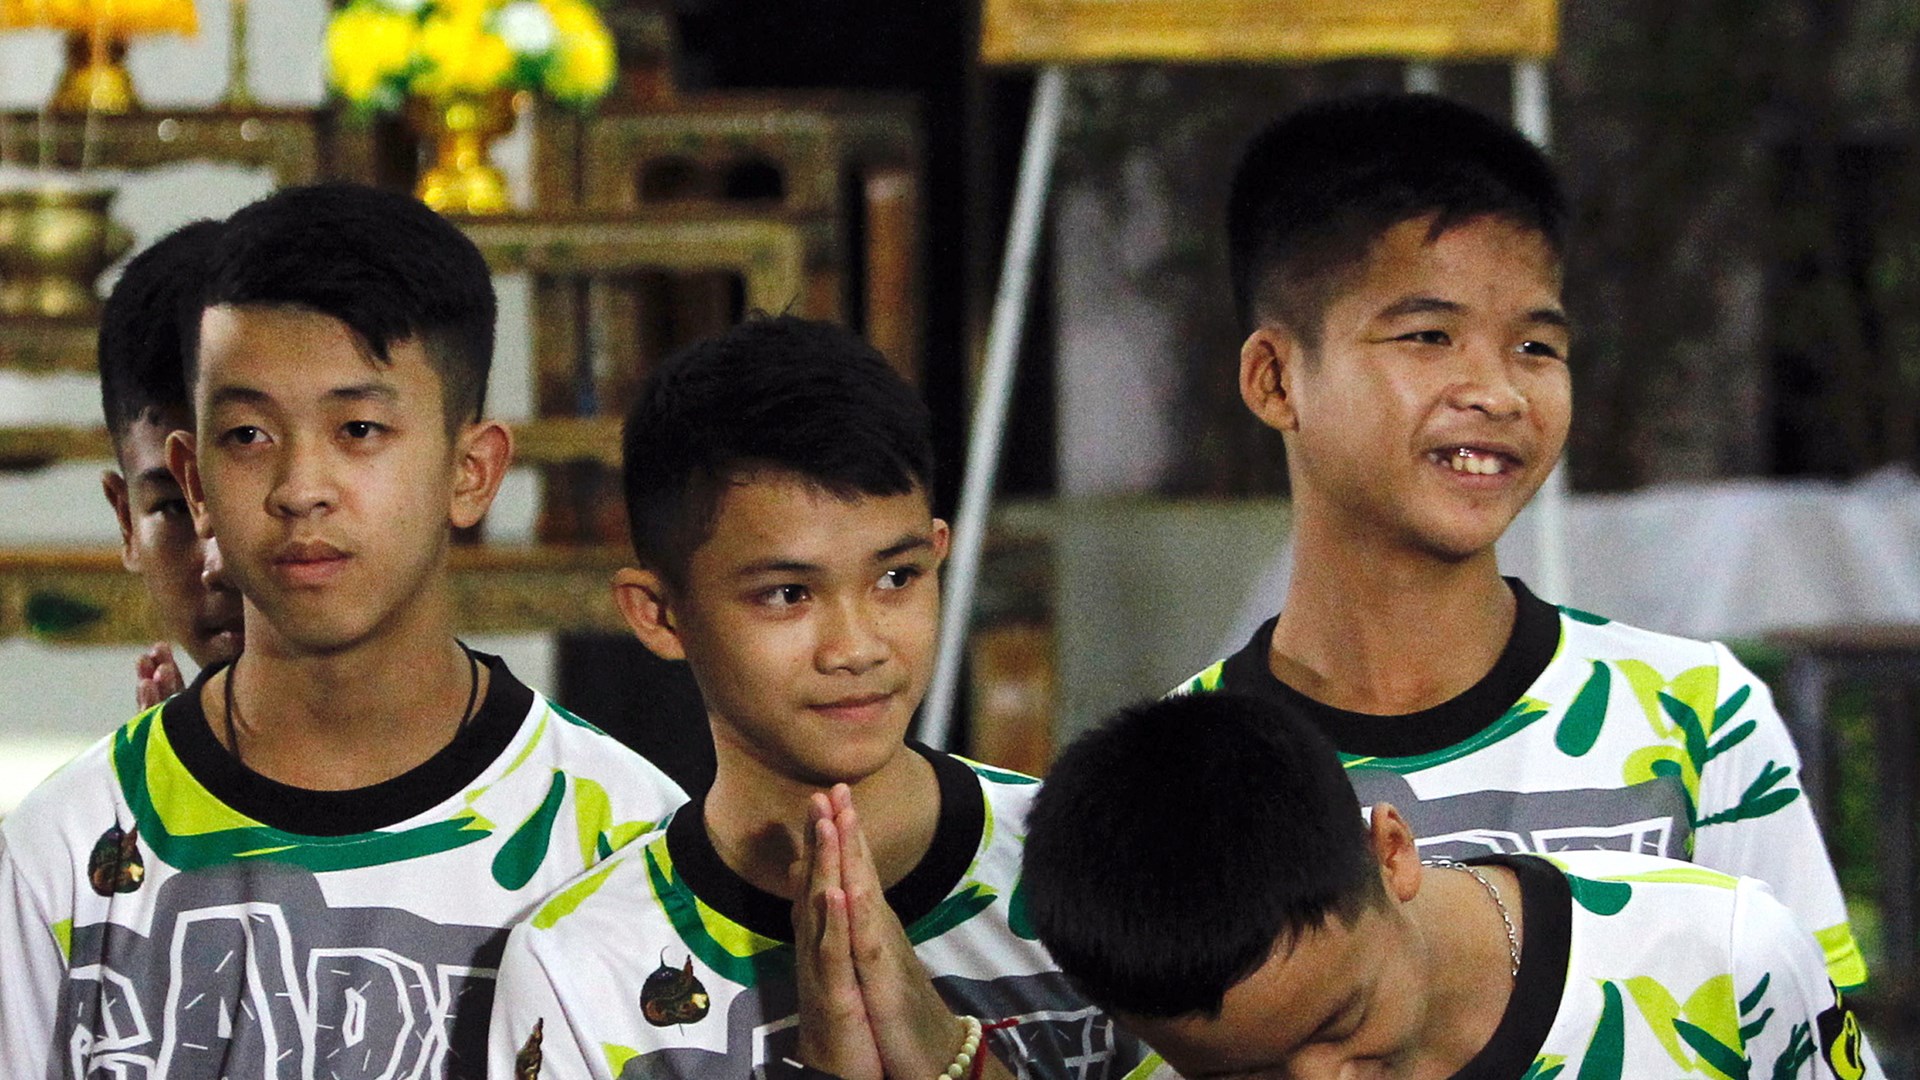 Ταϊλάνδη: Τα παιδιά θα χειροτονηθούν βουδιστές μοναχοί στη μνήμη του δύτη που έχασε τη ζωή του